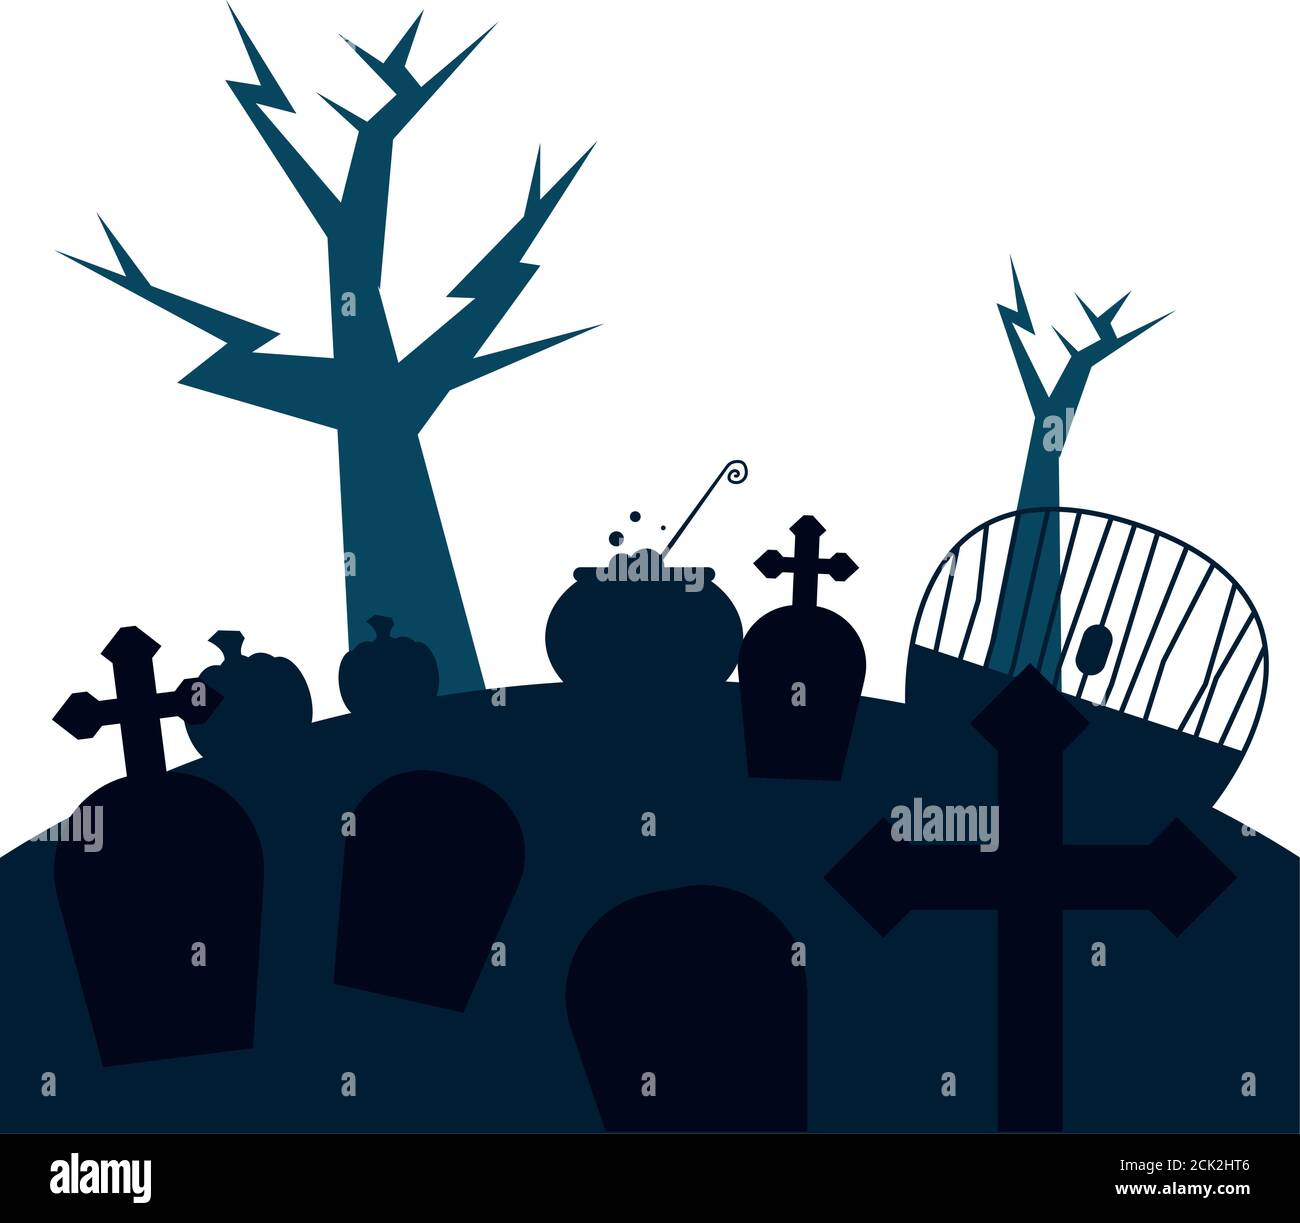 Tumbas Con Diseño De Cruces Y árboles Cementerio De La Tumba De La Muerte Y Tema De Miedo